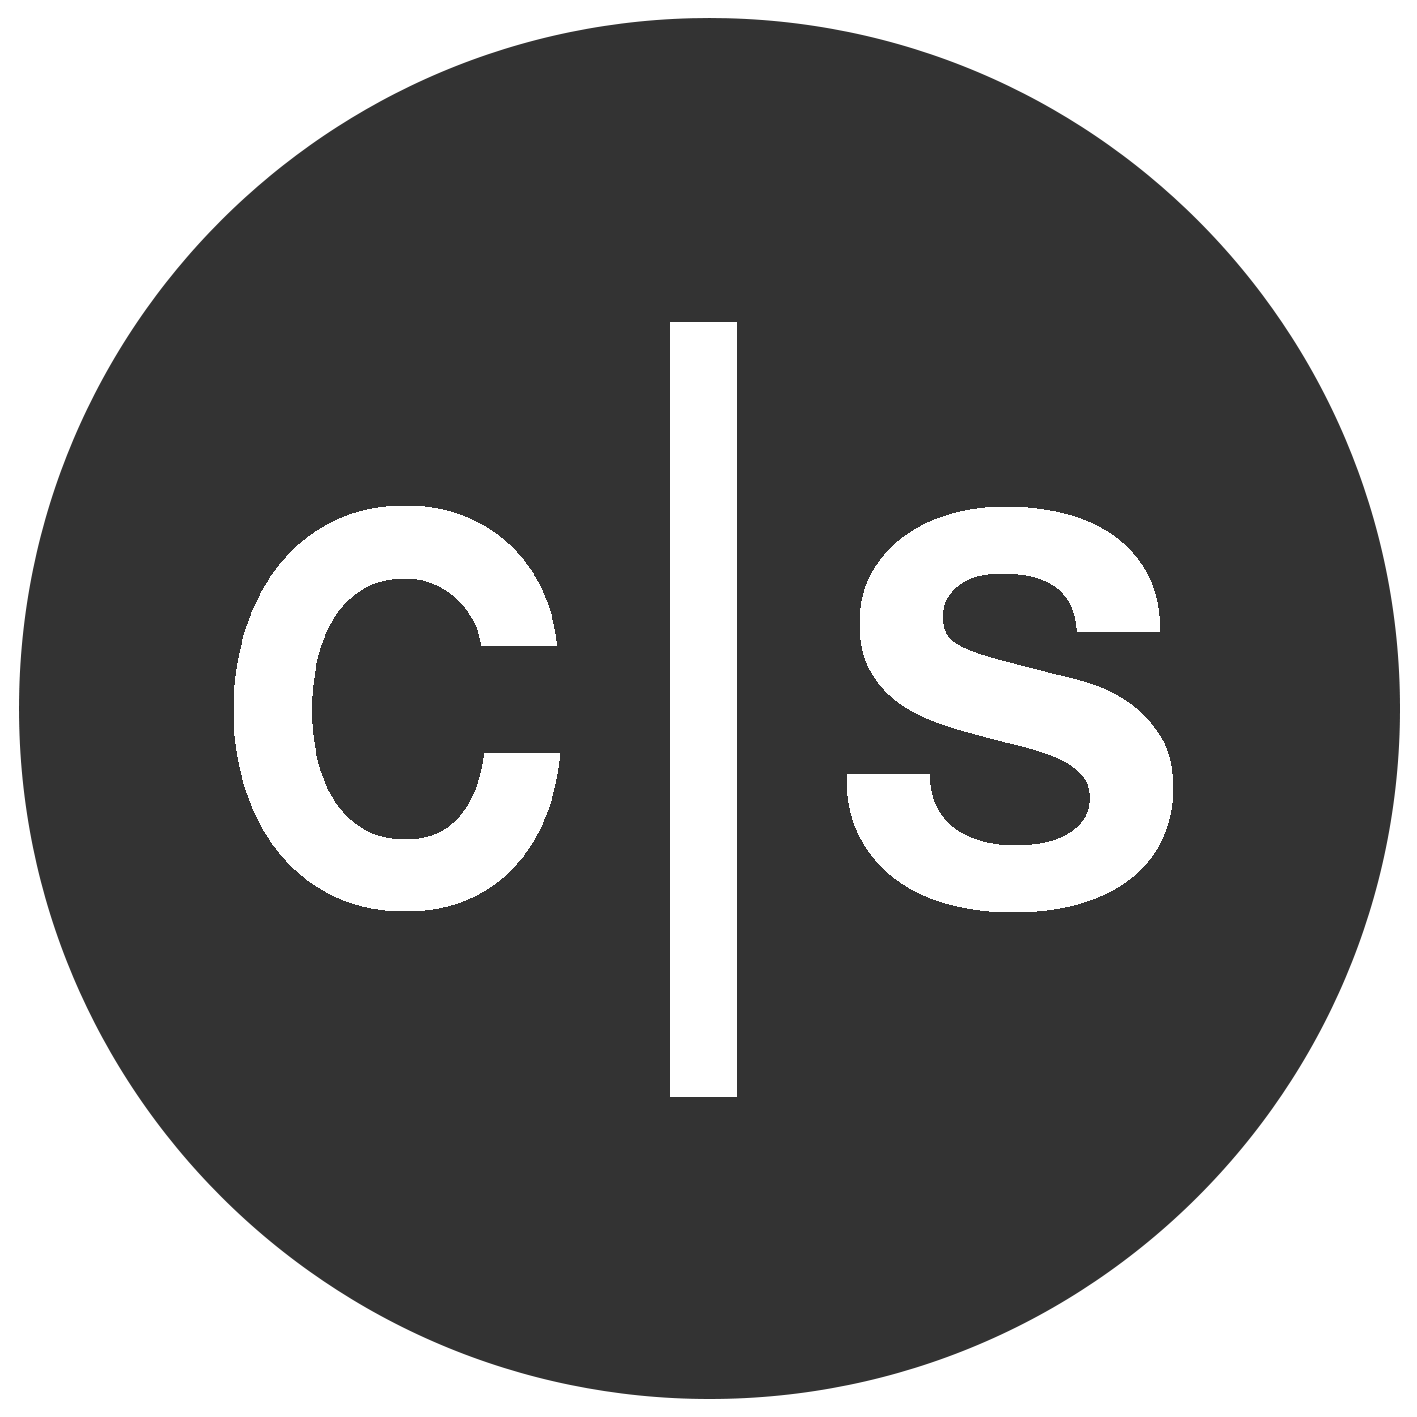 Circular logo with initials C S.